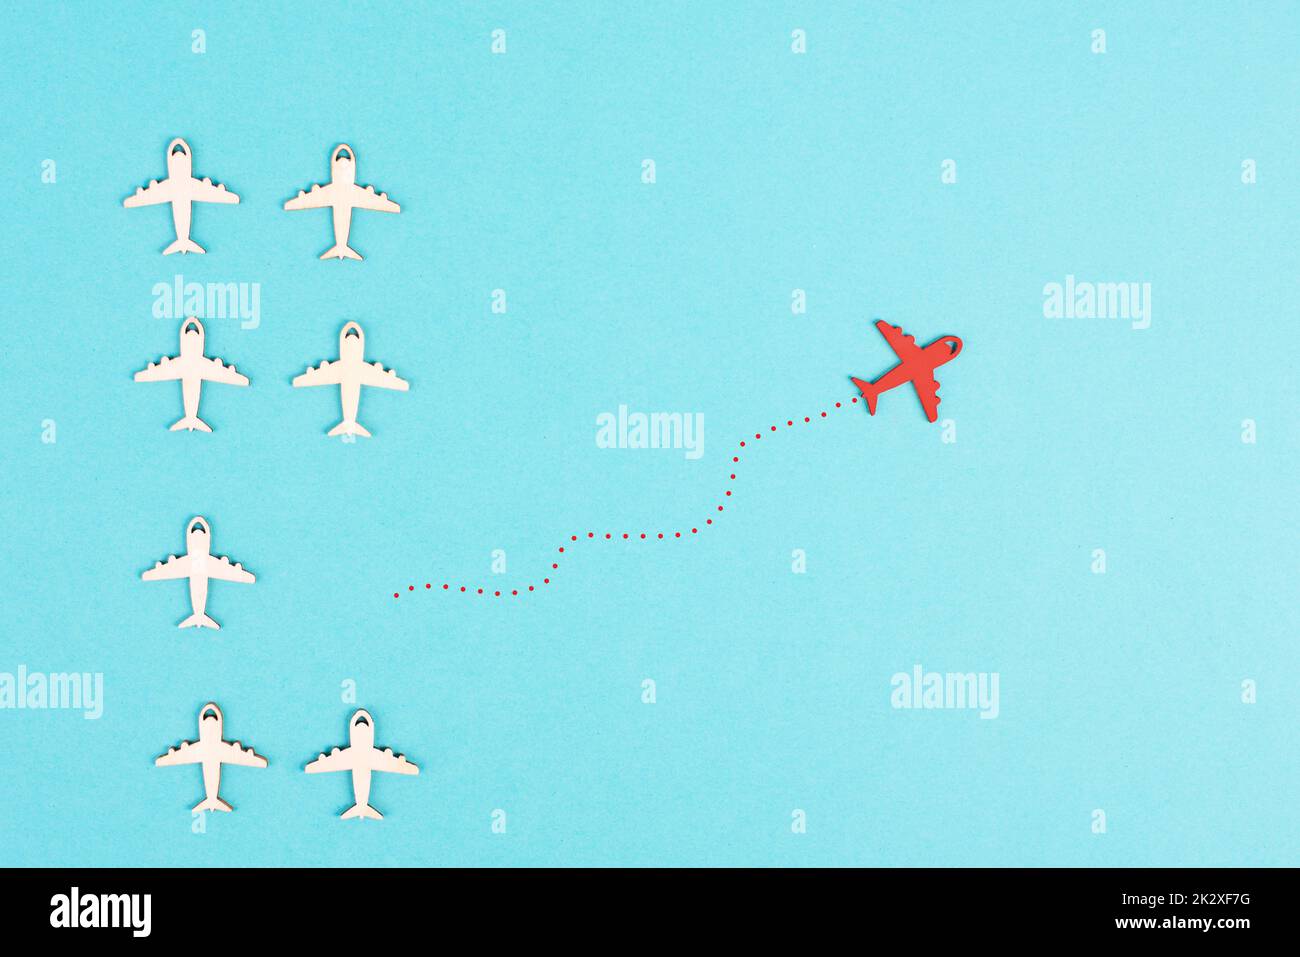 Flugzeuge, die der Gruppe folgen, denkt Red Plane anders und nimmt die entgegengesetzte Richtung, Führung, Mut und Siegerkonzept Stockfoto